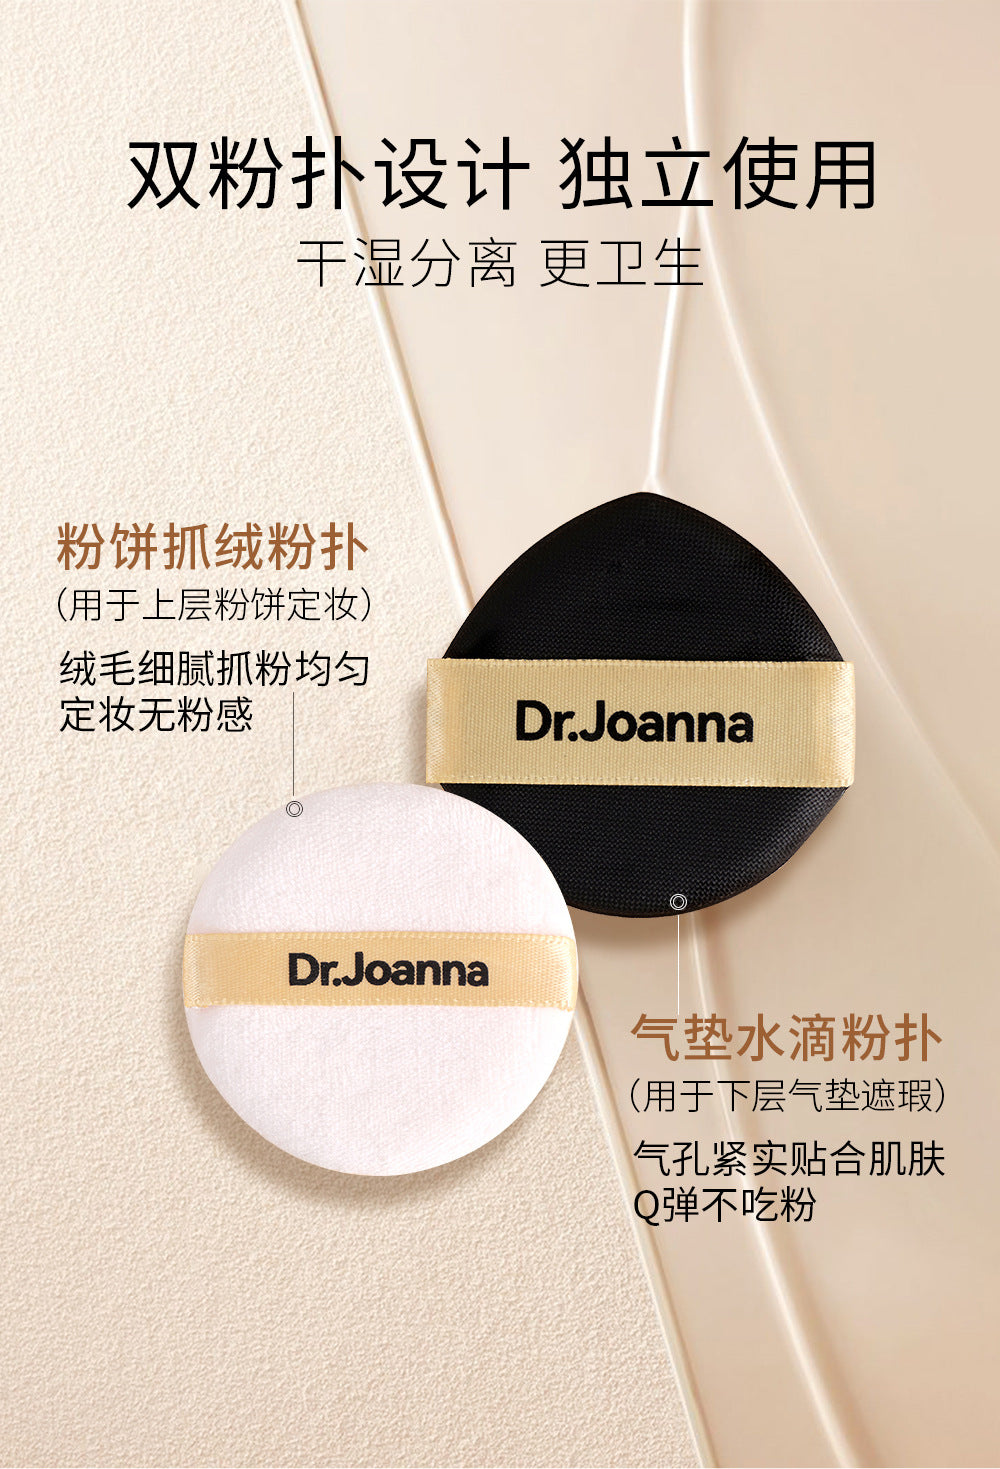 Dr. Joanna Flaxseed Boson Dual-Layer Air Cushion CC Cream 11g+6.4g 蝶安娜亚麻籽玻色因双层气垫CC霜